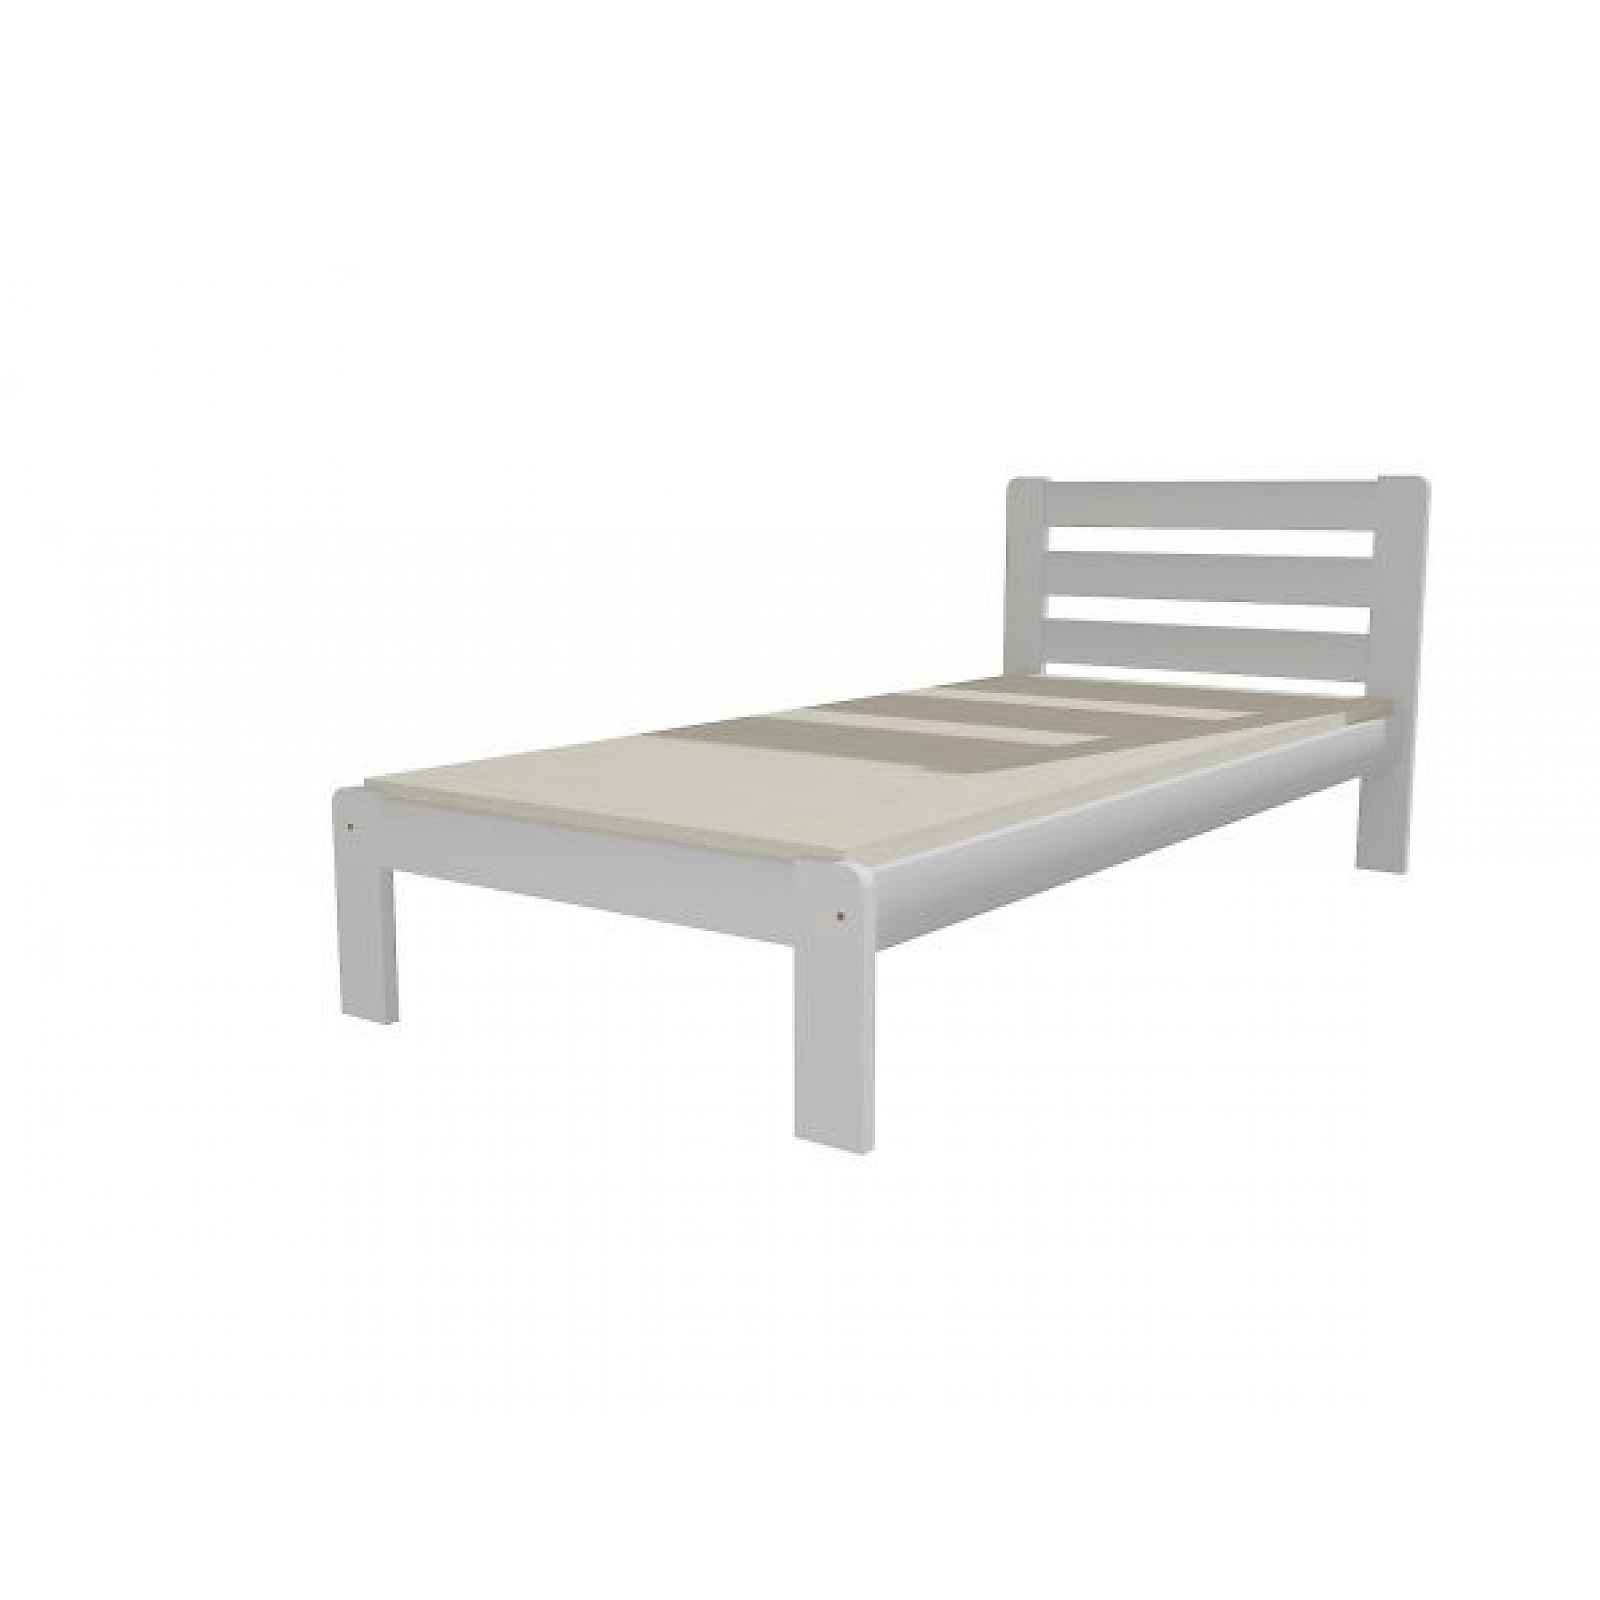 Jednolůžková postel VMK001A, bílá